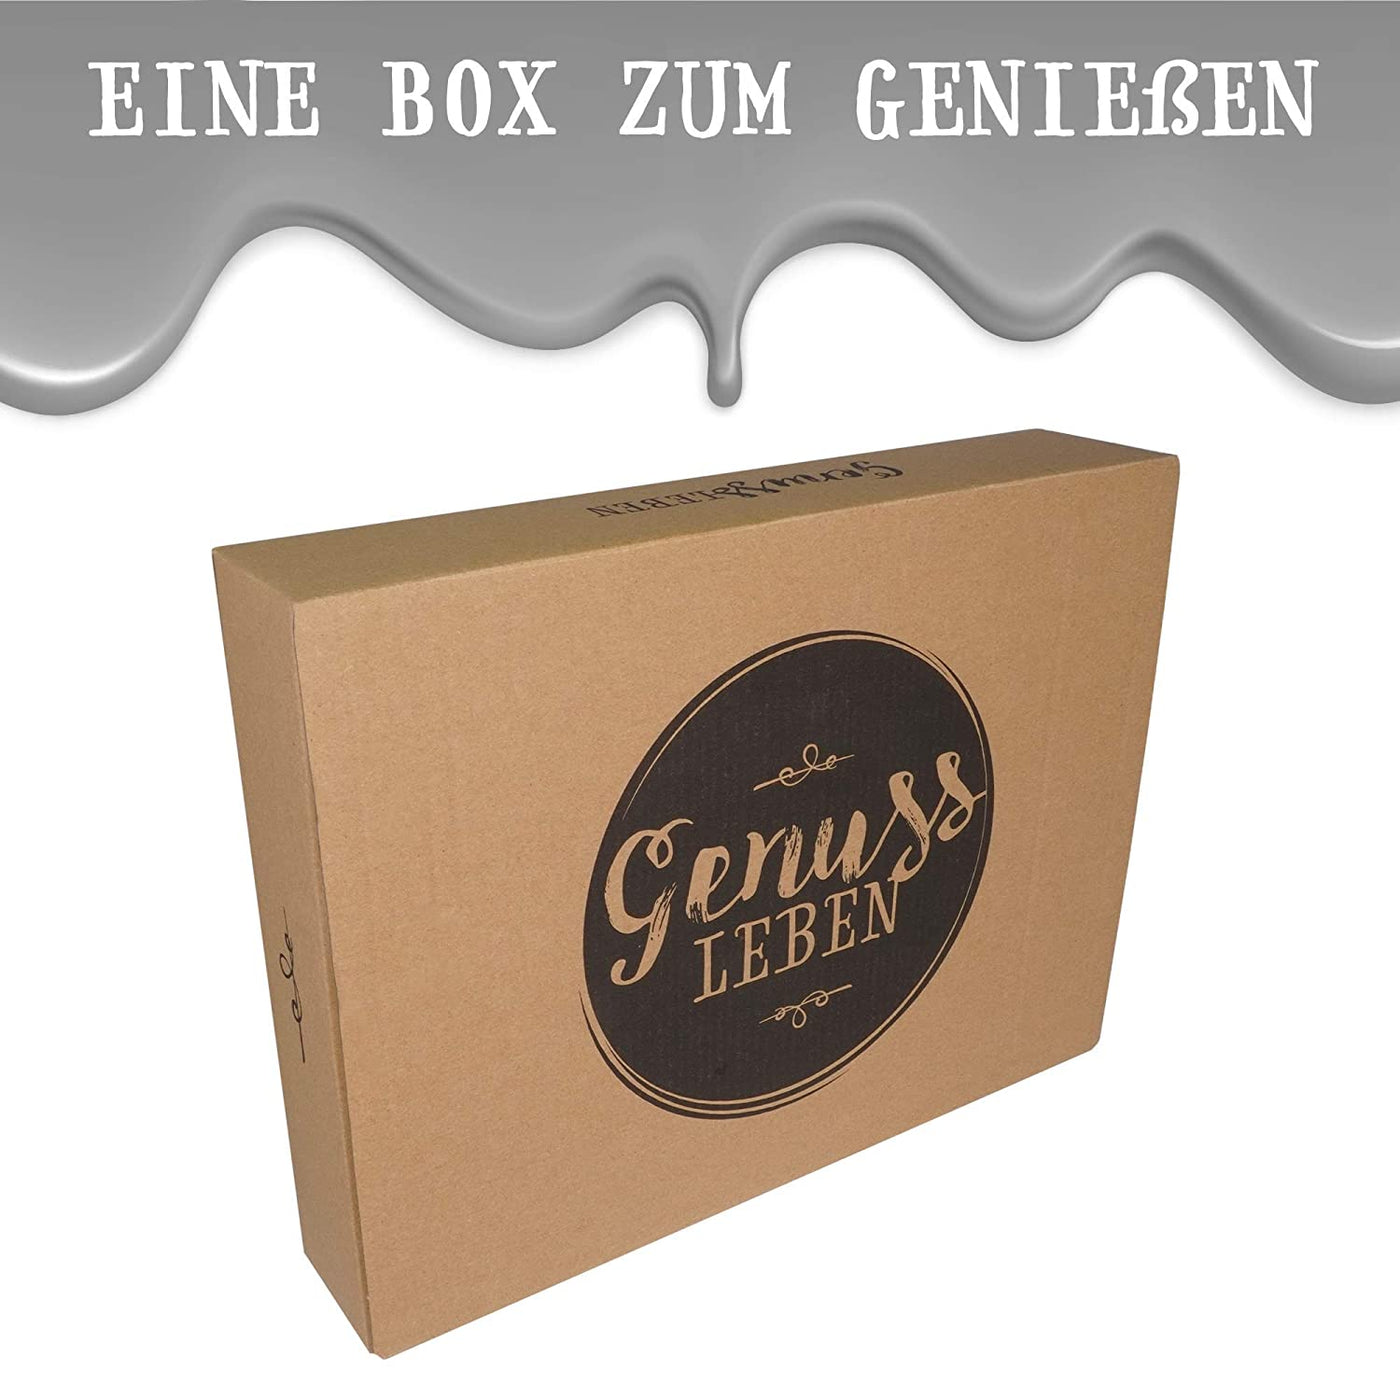 Genussleben Box mit 3kg Lindor Kugeln gemischt - Genussleben